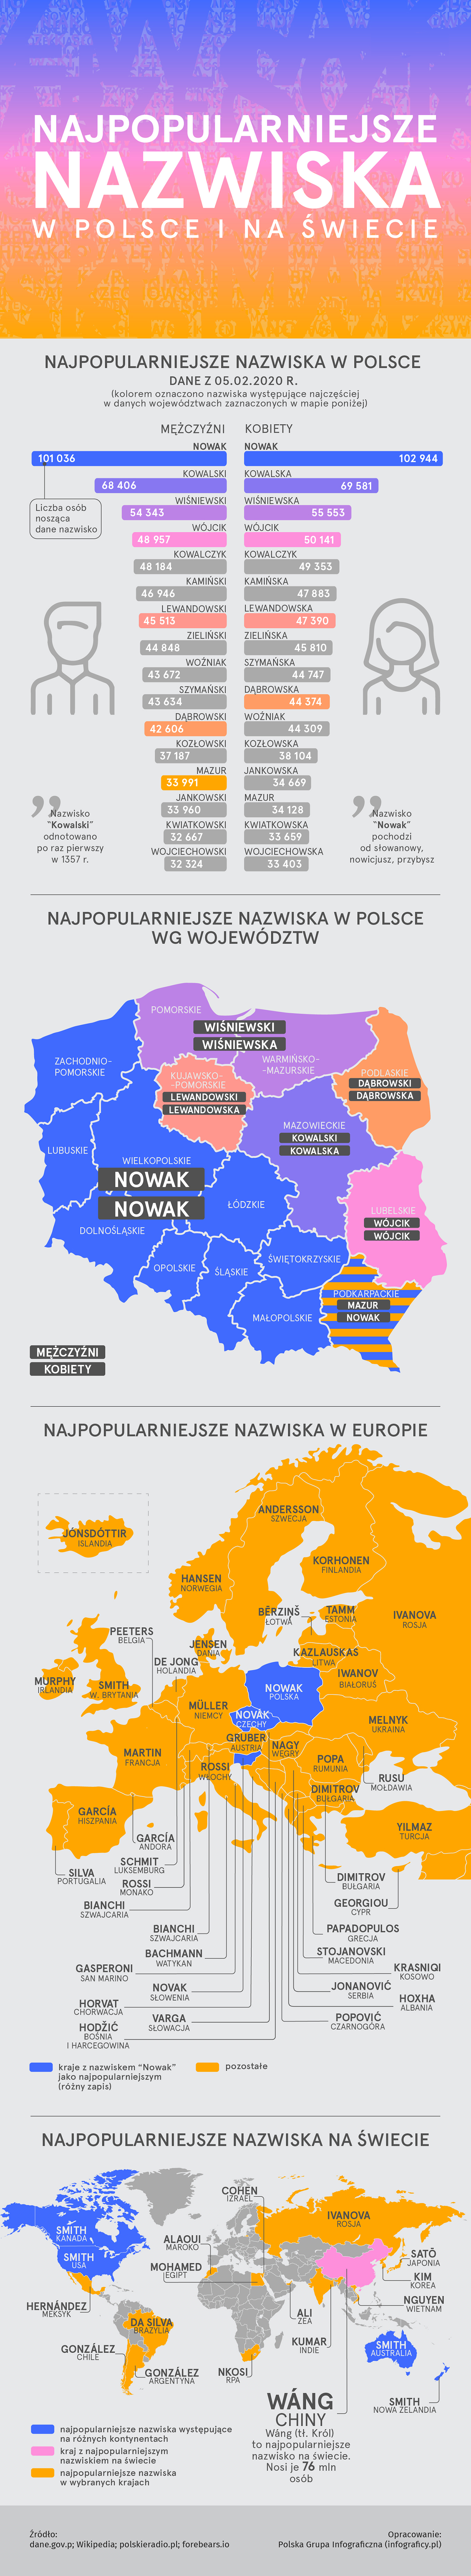 Najpopularniejsze nazwiska w Polsce 2020